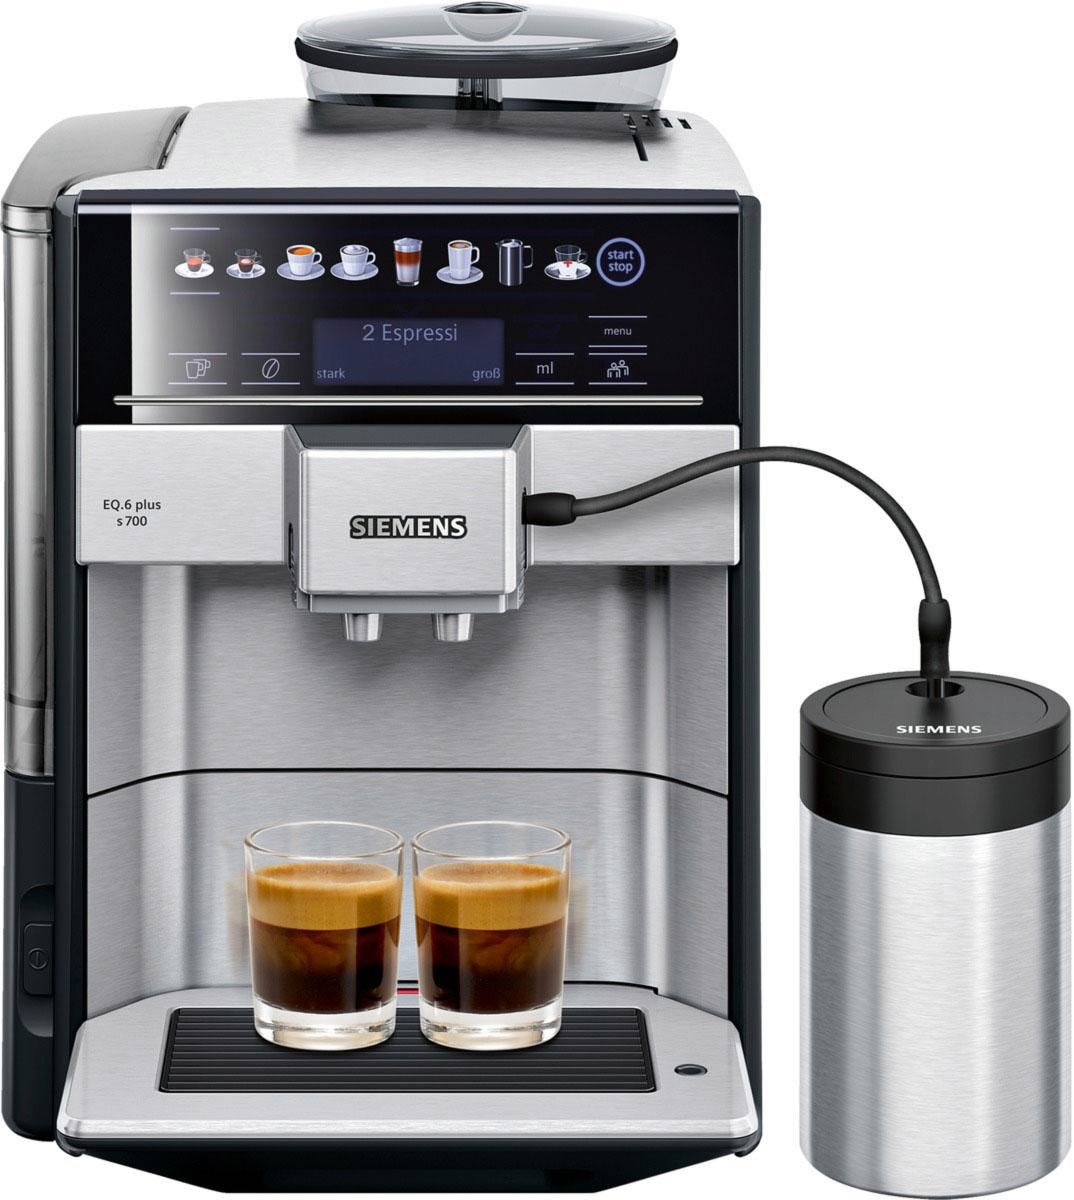 SIEMENS kaufen Scheibenmahlwerk EQ.6 auf 1,7l Tank, plus Rechnung s700 Kaffeevollautomat TE657503DE,